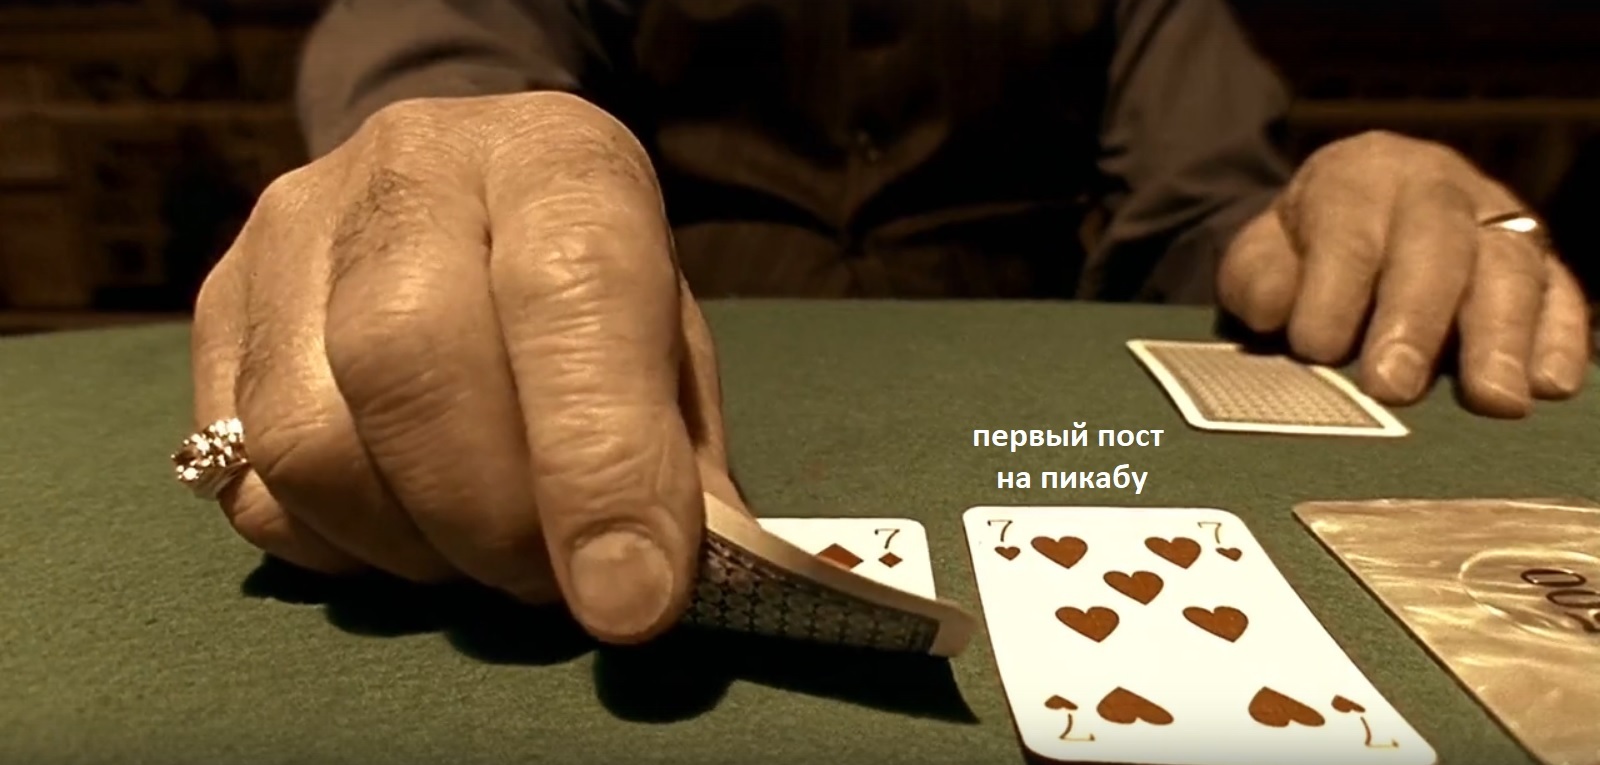 Игры на деньги карты kartydengi. Карты деньги два ствола Покер. Покер два ствола. Карты деньги два ствола игра. Карты деньги два ствола проиграл.